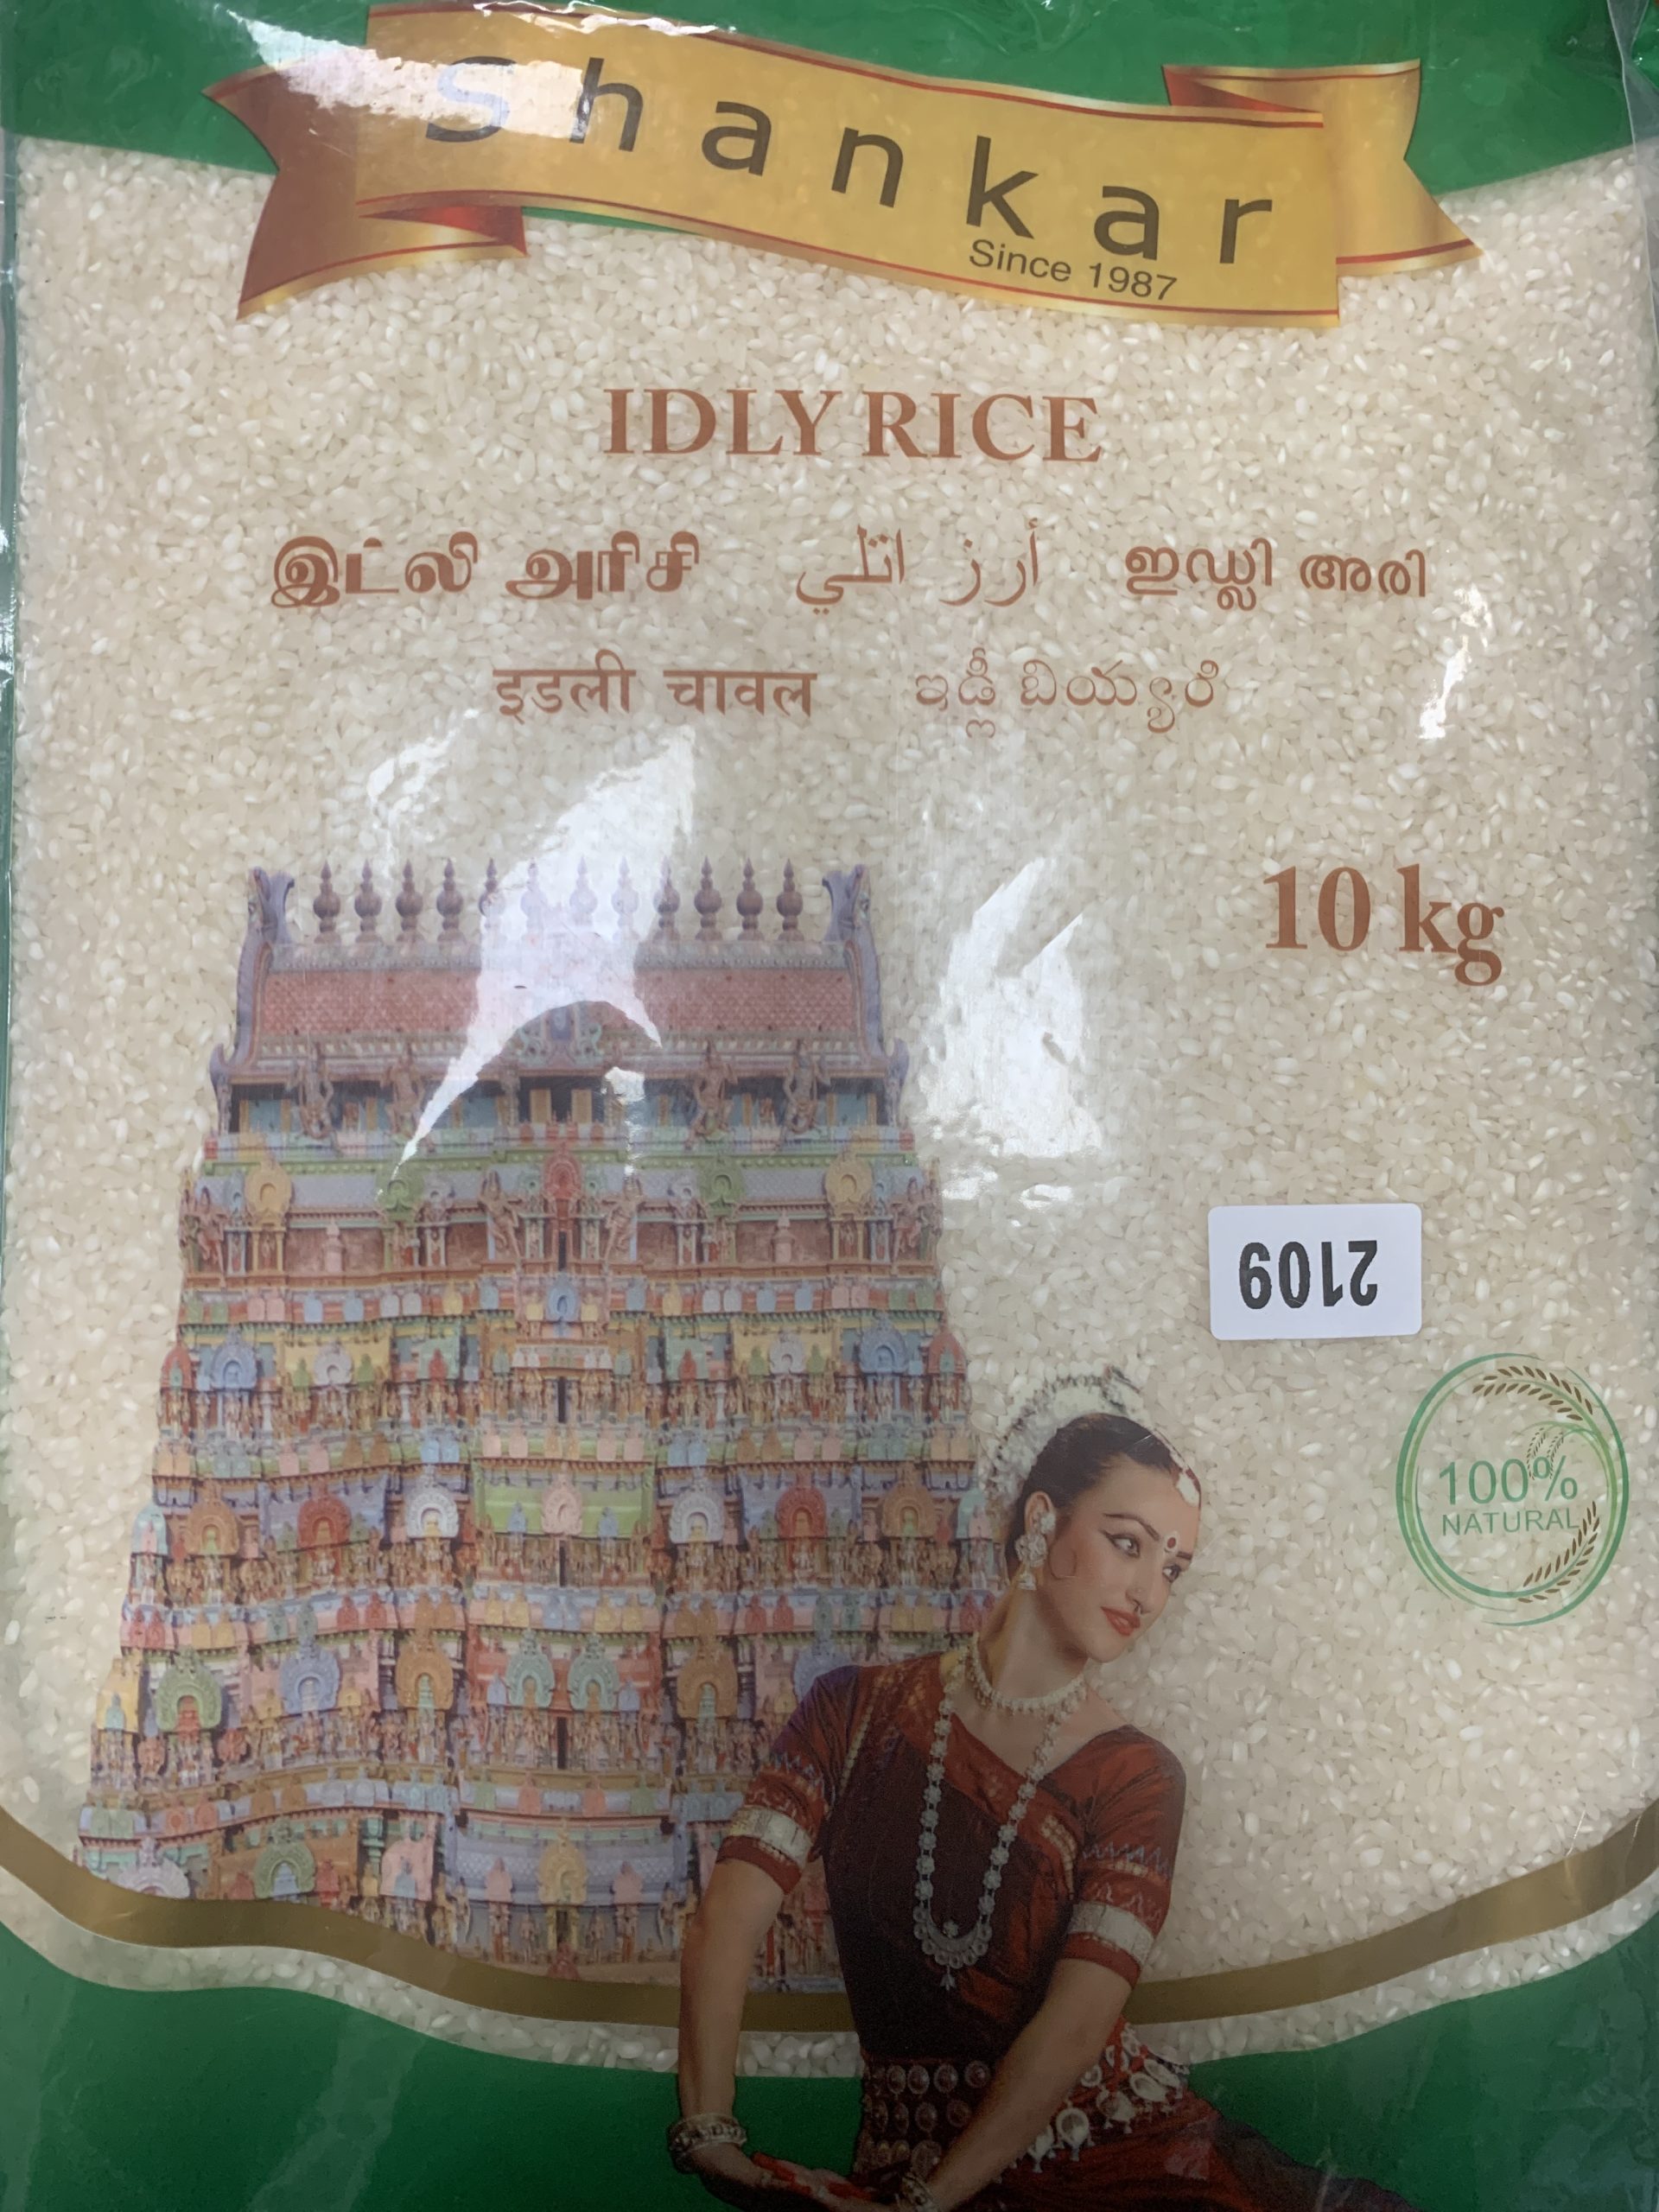 Shankar idli Rice 10kg